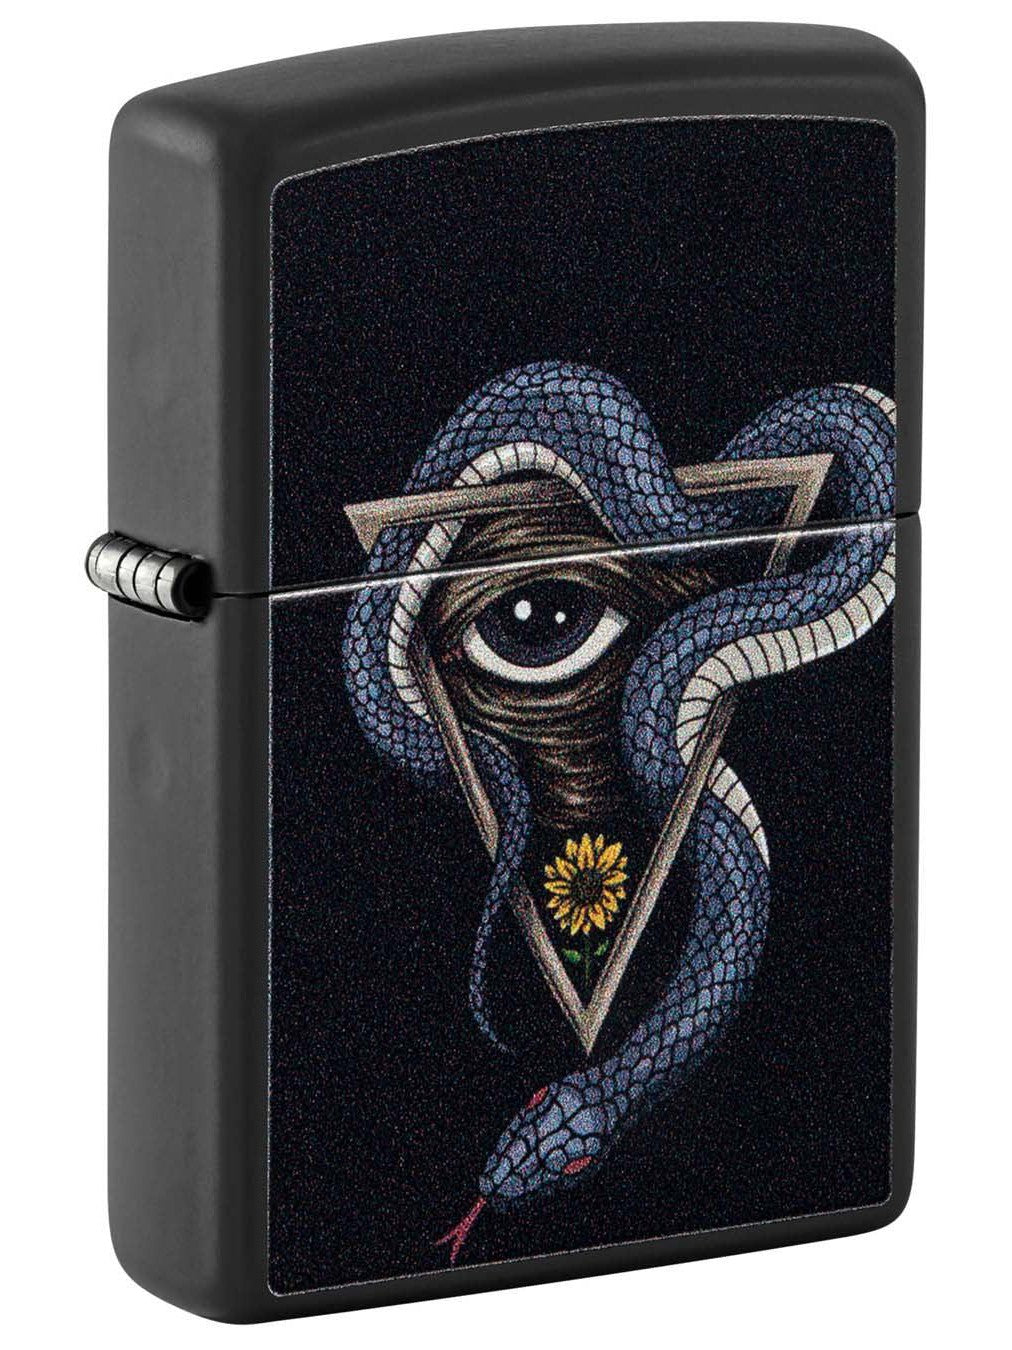 Zippo Lighter: Snake and Eye - Black Matte 48651